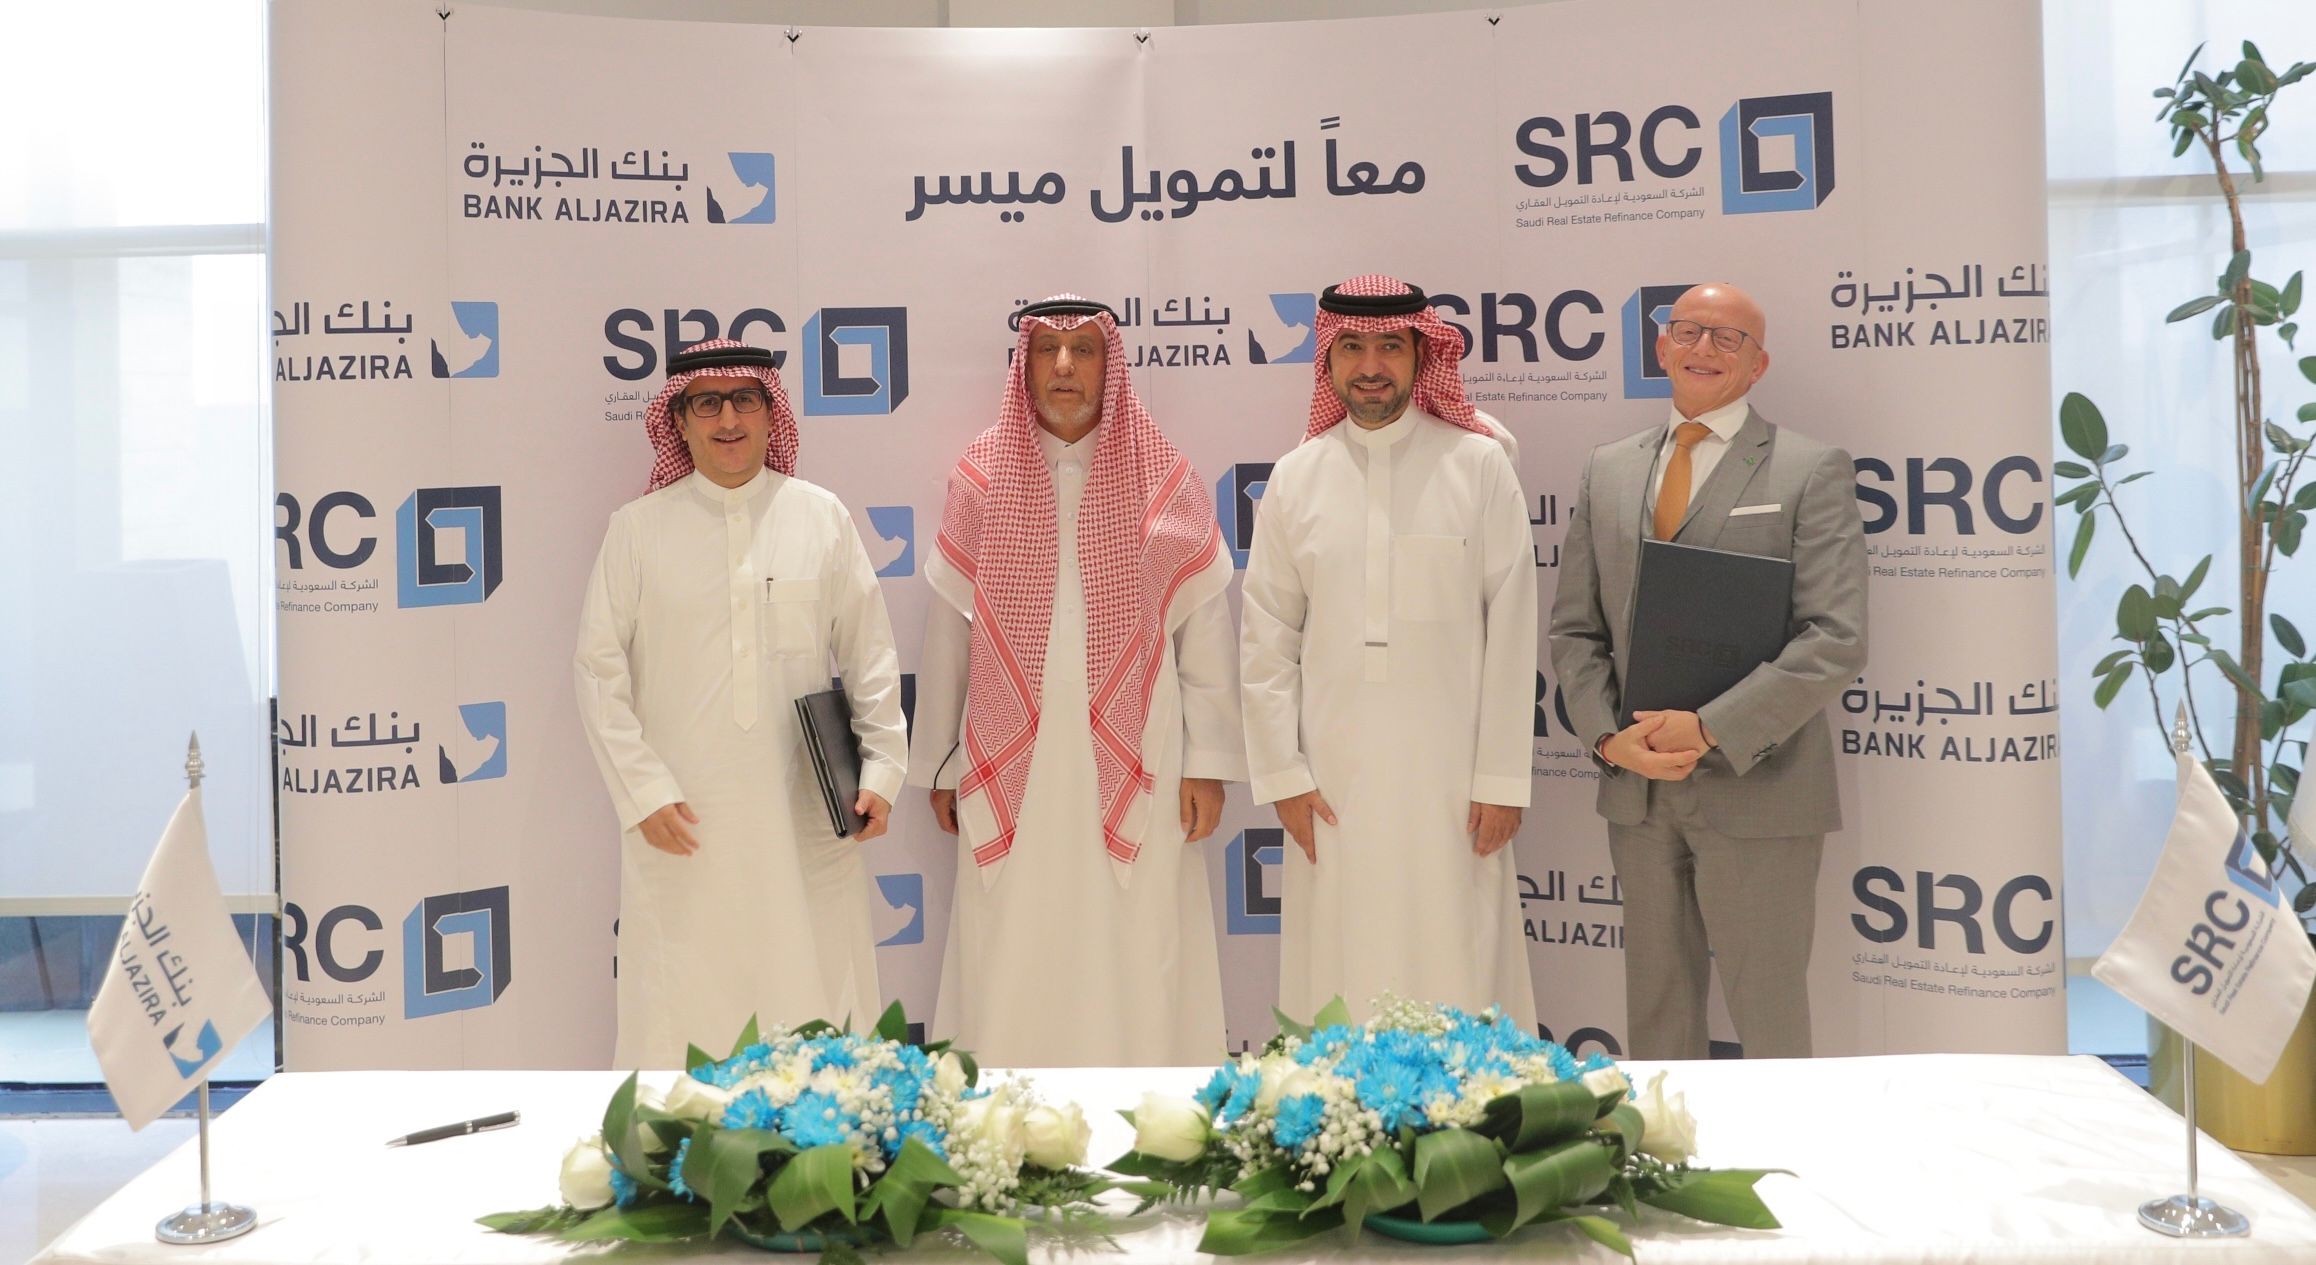 "السعودية لإعادة التمويل" و"بنك الجزيرة" يوقّعان اتفاقية ثانية لشراء محفظة تمويل عقاري بقيمة 300 مليون ريال